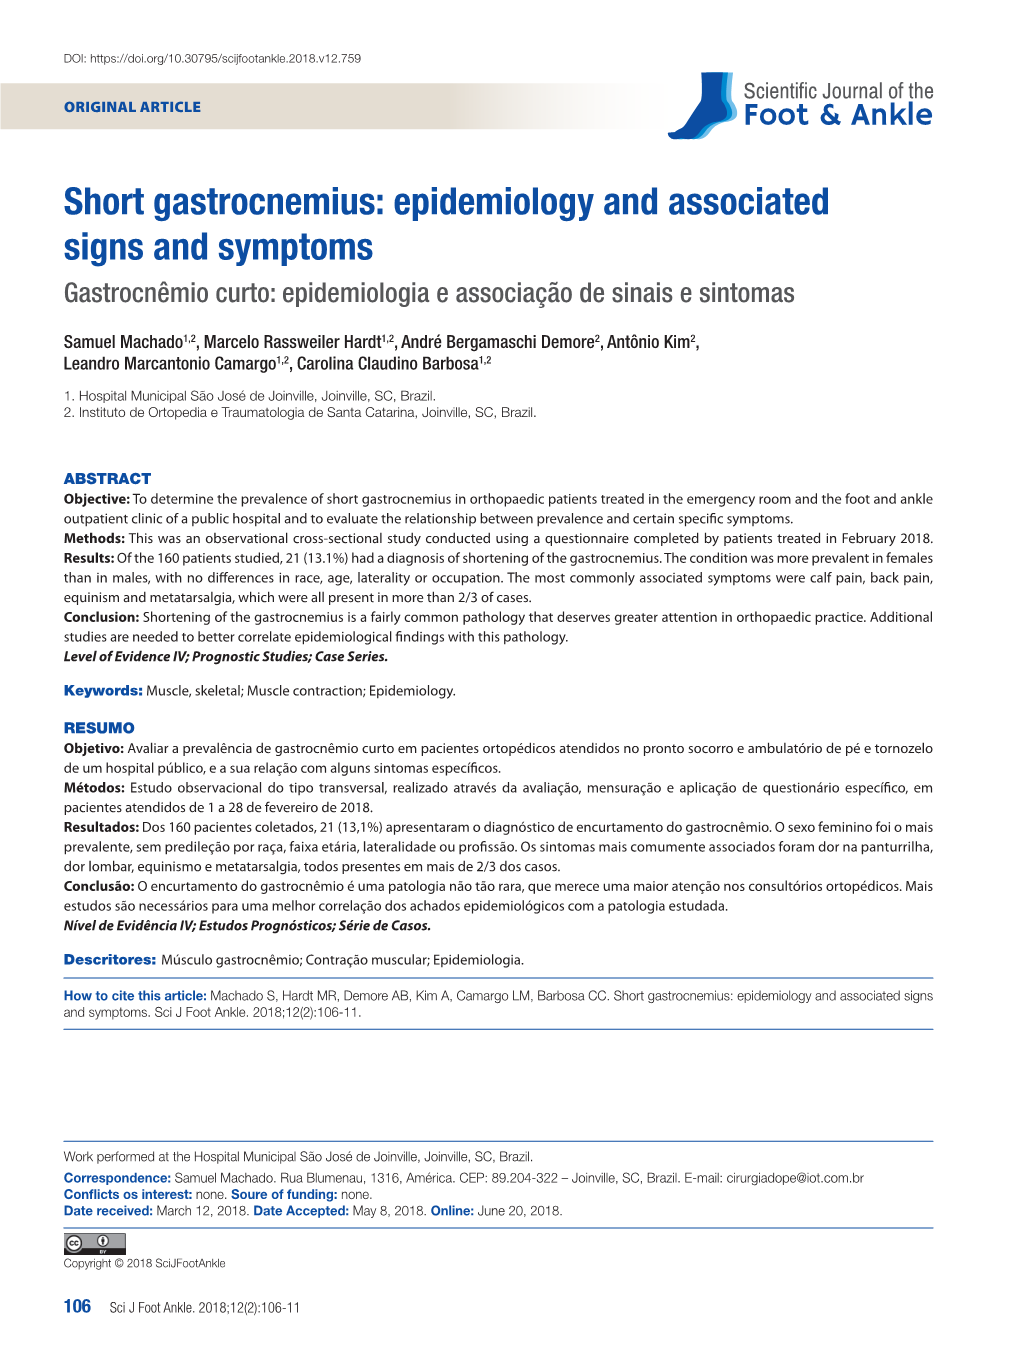 Short Gastrocnemius: Epidemiology and Associated Signs and Symptoms Gastrocnêmio Curto: Epidemiologia E Associação De Sinais E Sintomas